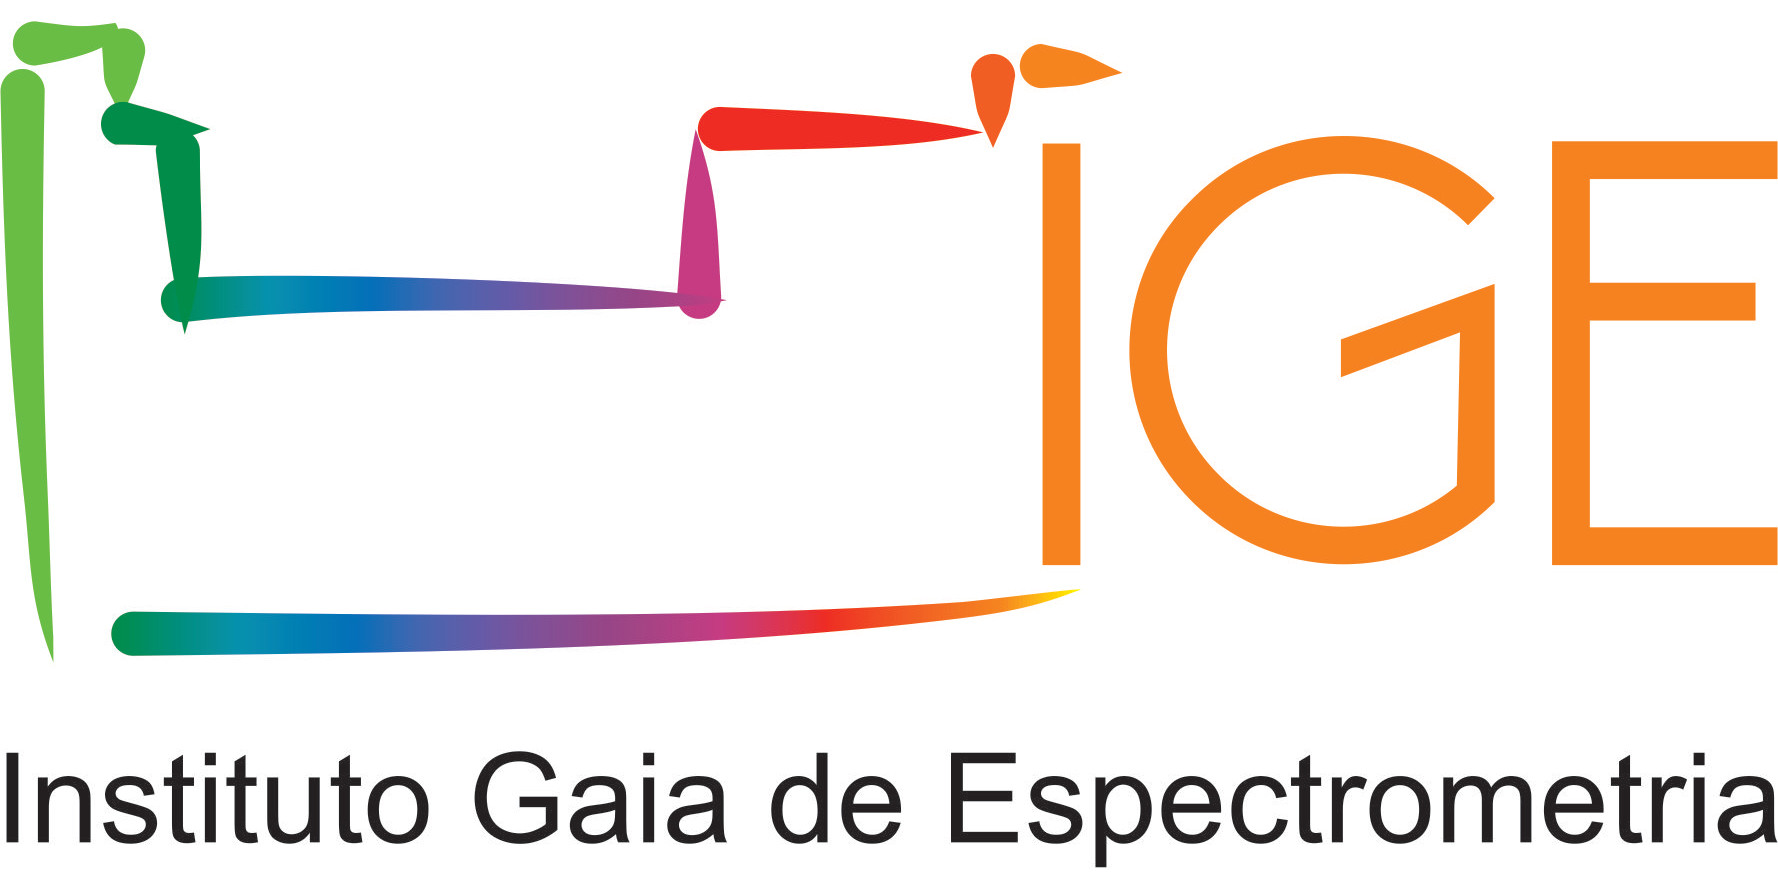 Instituto Gaia de Espectrometria - IGE